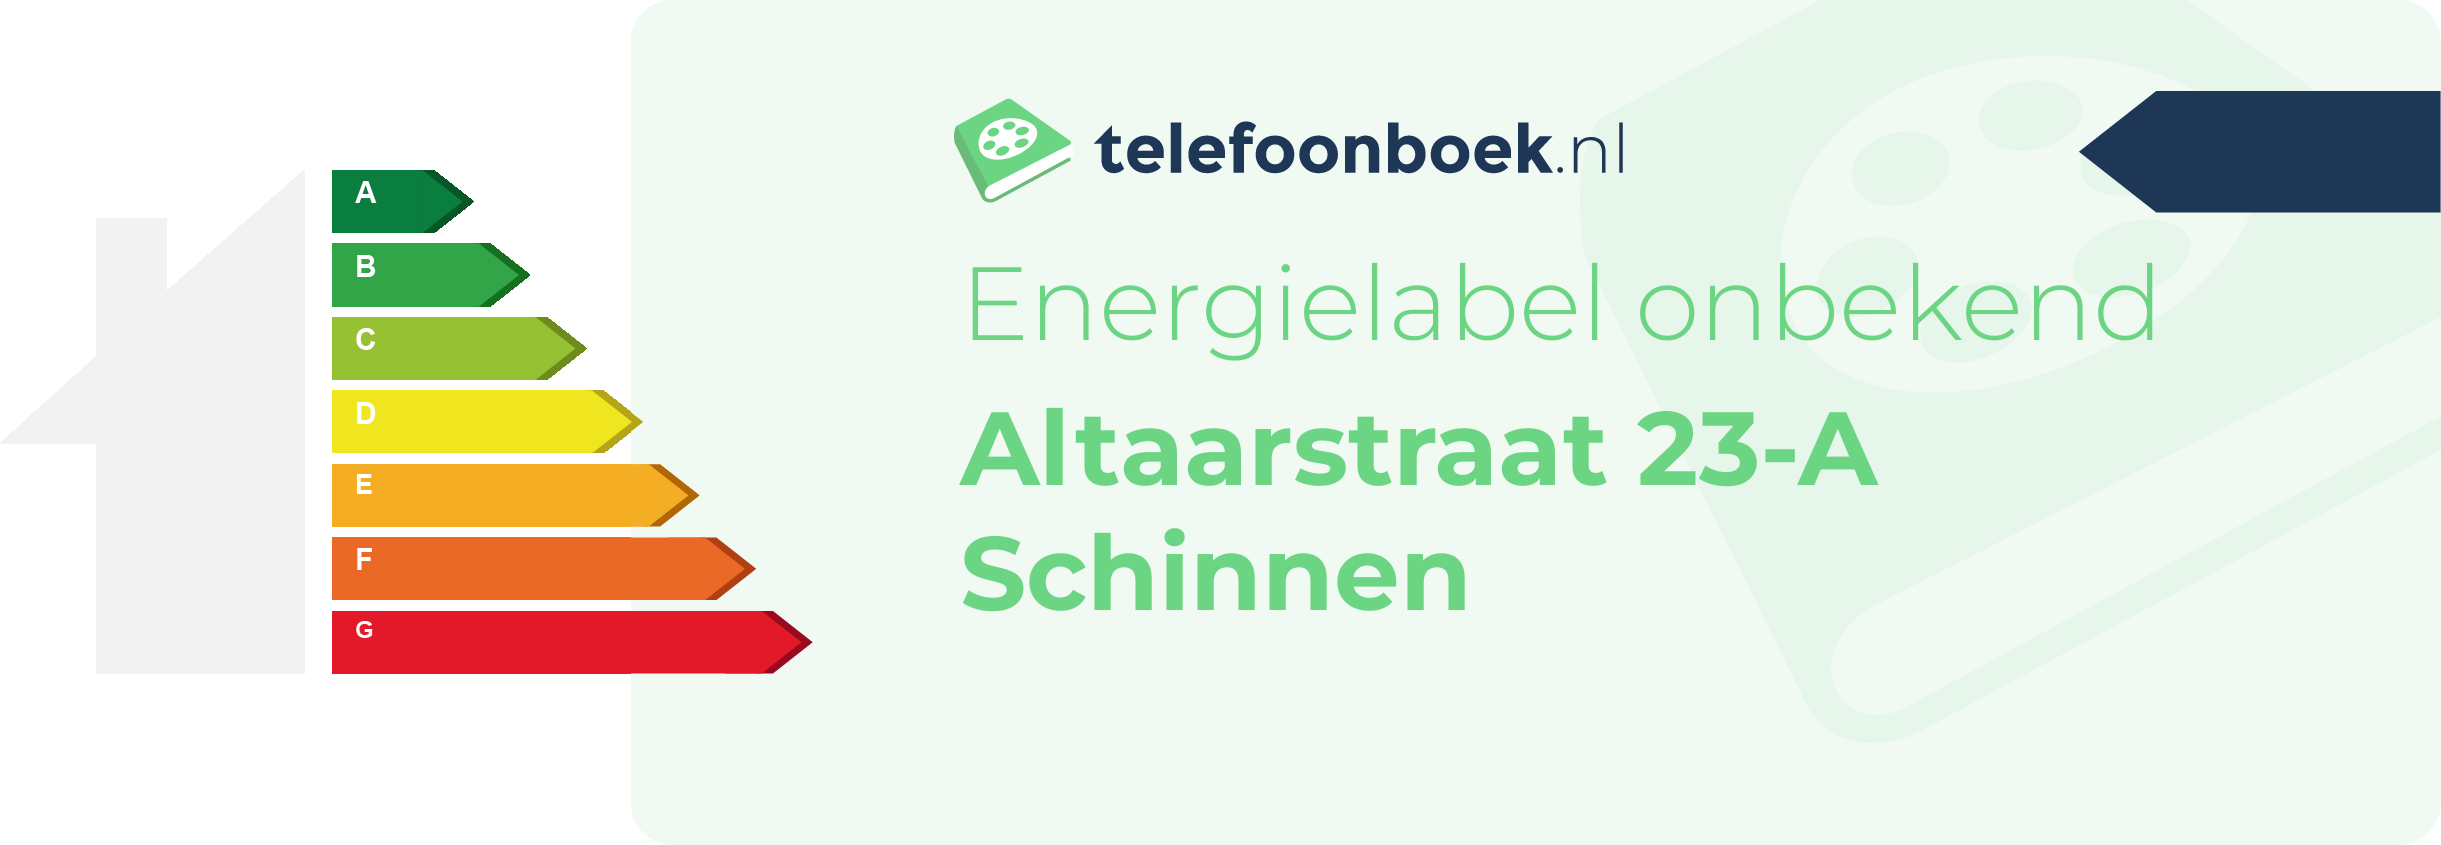 Energielabel Altaarstraat 23-A Schinnen